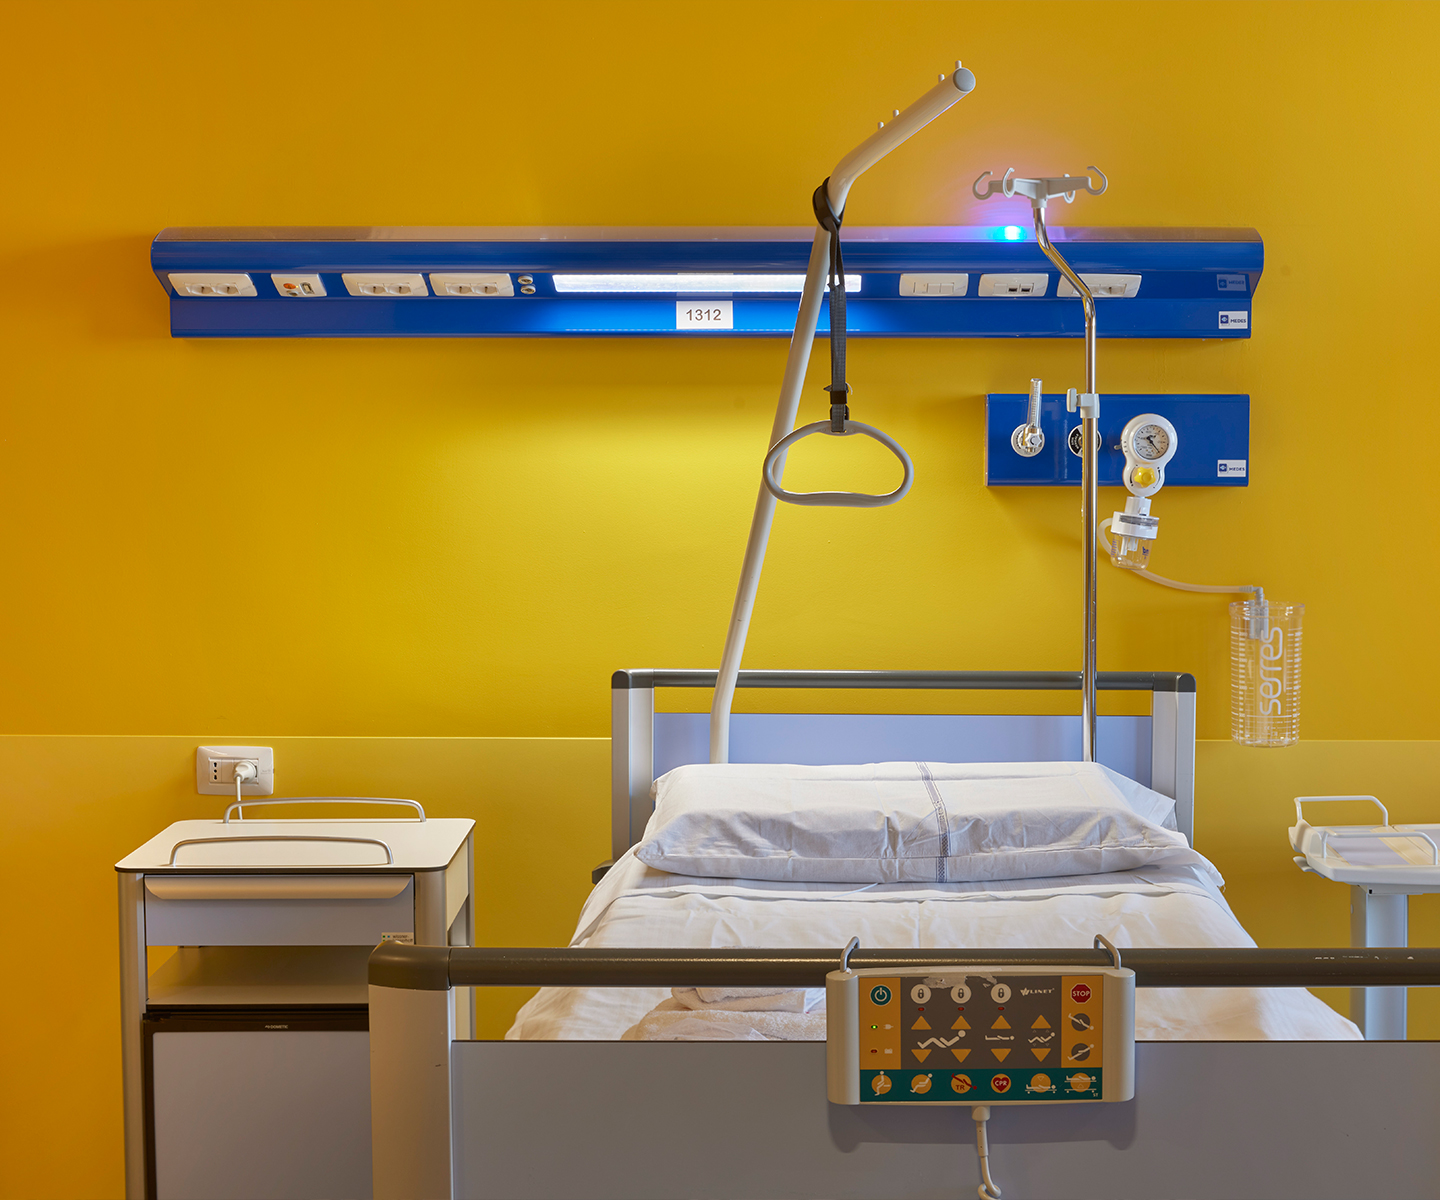 Prese Chorusmart antibatteriche Gewiss installata in una camera dell'ospedale Galeazzi sant'Ambrogio.